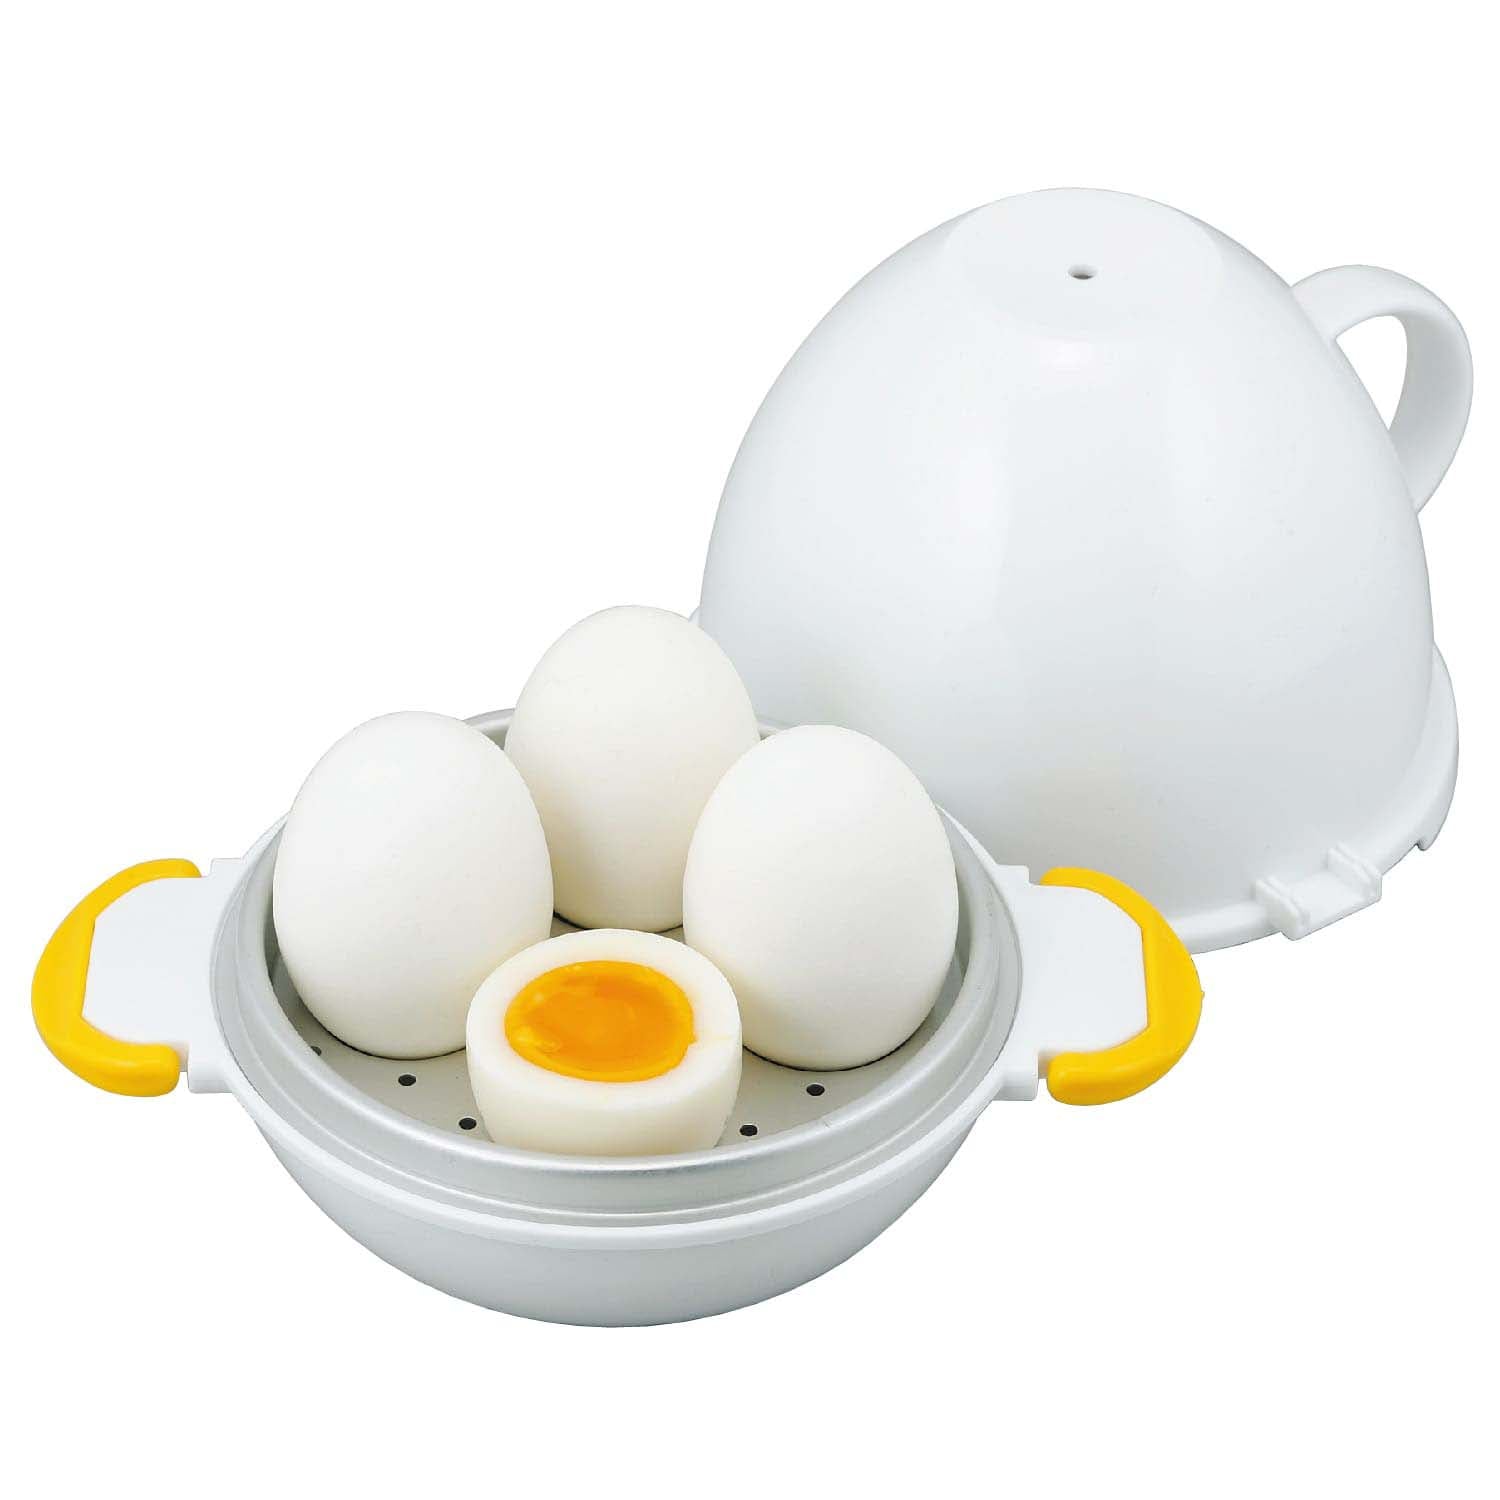 Microwave Egg Boiler Cooker, TSV Microwave Rapid 4 Eggs Boiler, Electric  Eggs Cooker, Eggs Steamer, Big Boiley Microwave Egg Cooker (White)